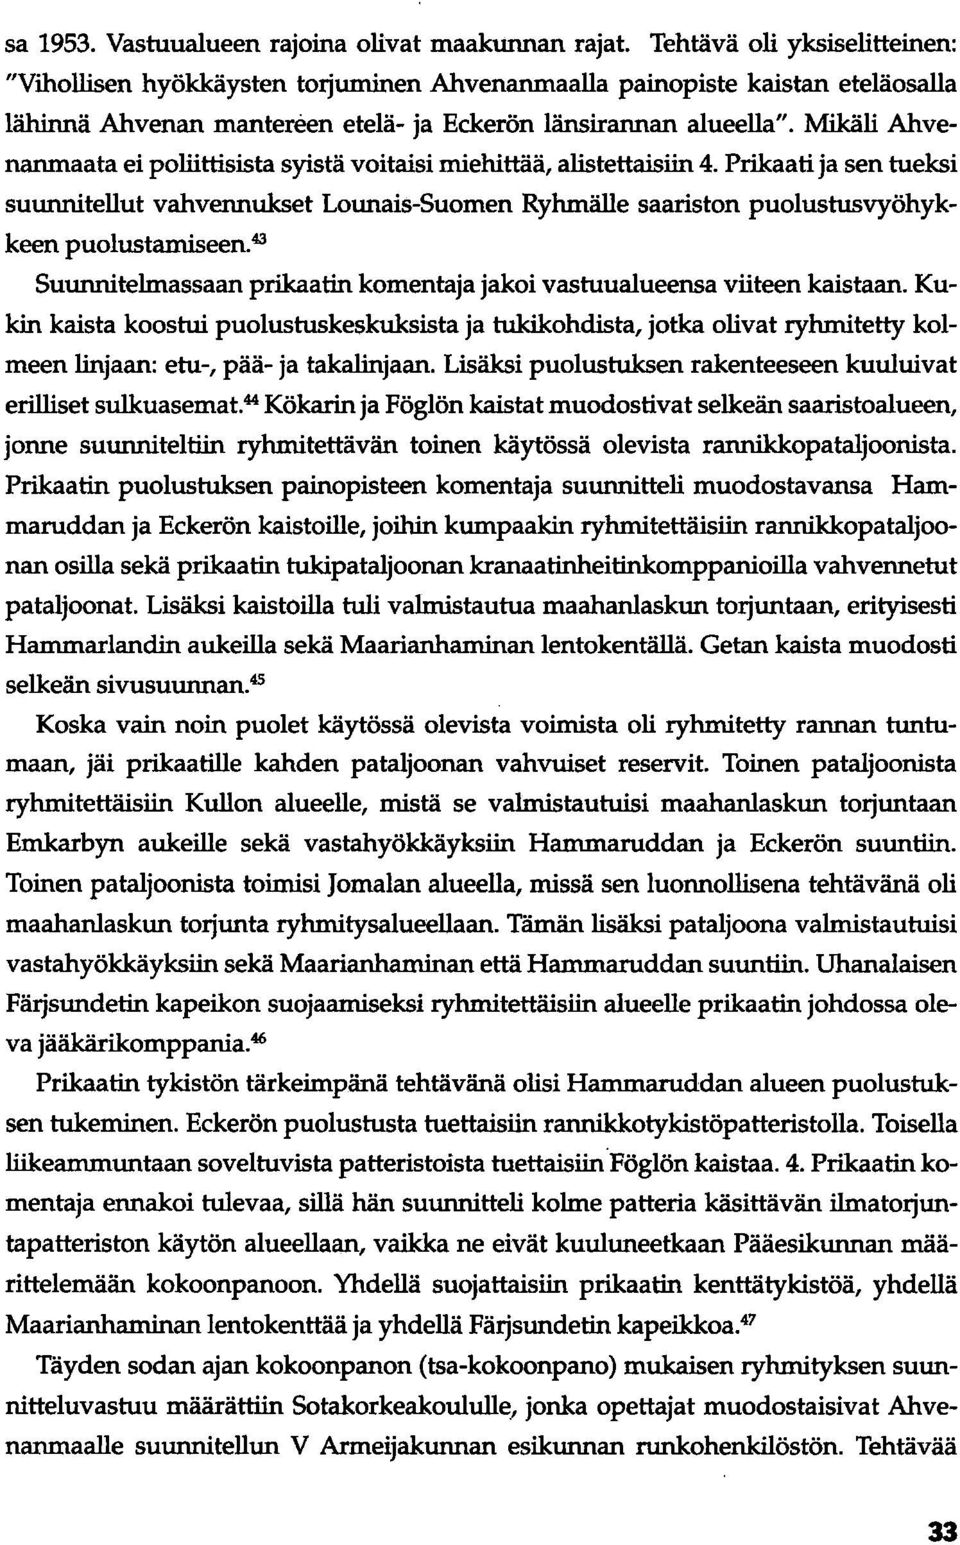 Mikäli Ahvenanmaata ei poliittisista syistä voitaisi miehittää, alistettaisiin 4. Prikaati ja sen tueksi suunnitellut vahvennukset Lounais-Suomen Ryhmälle saariston puolustusvyöhykkeen puolustamiseen.